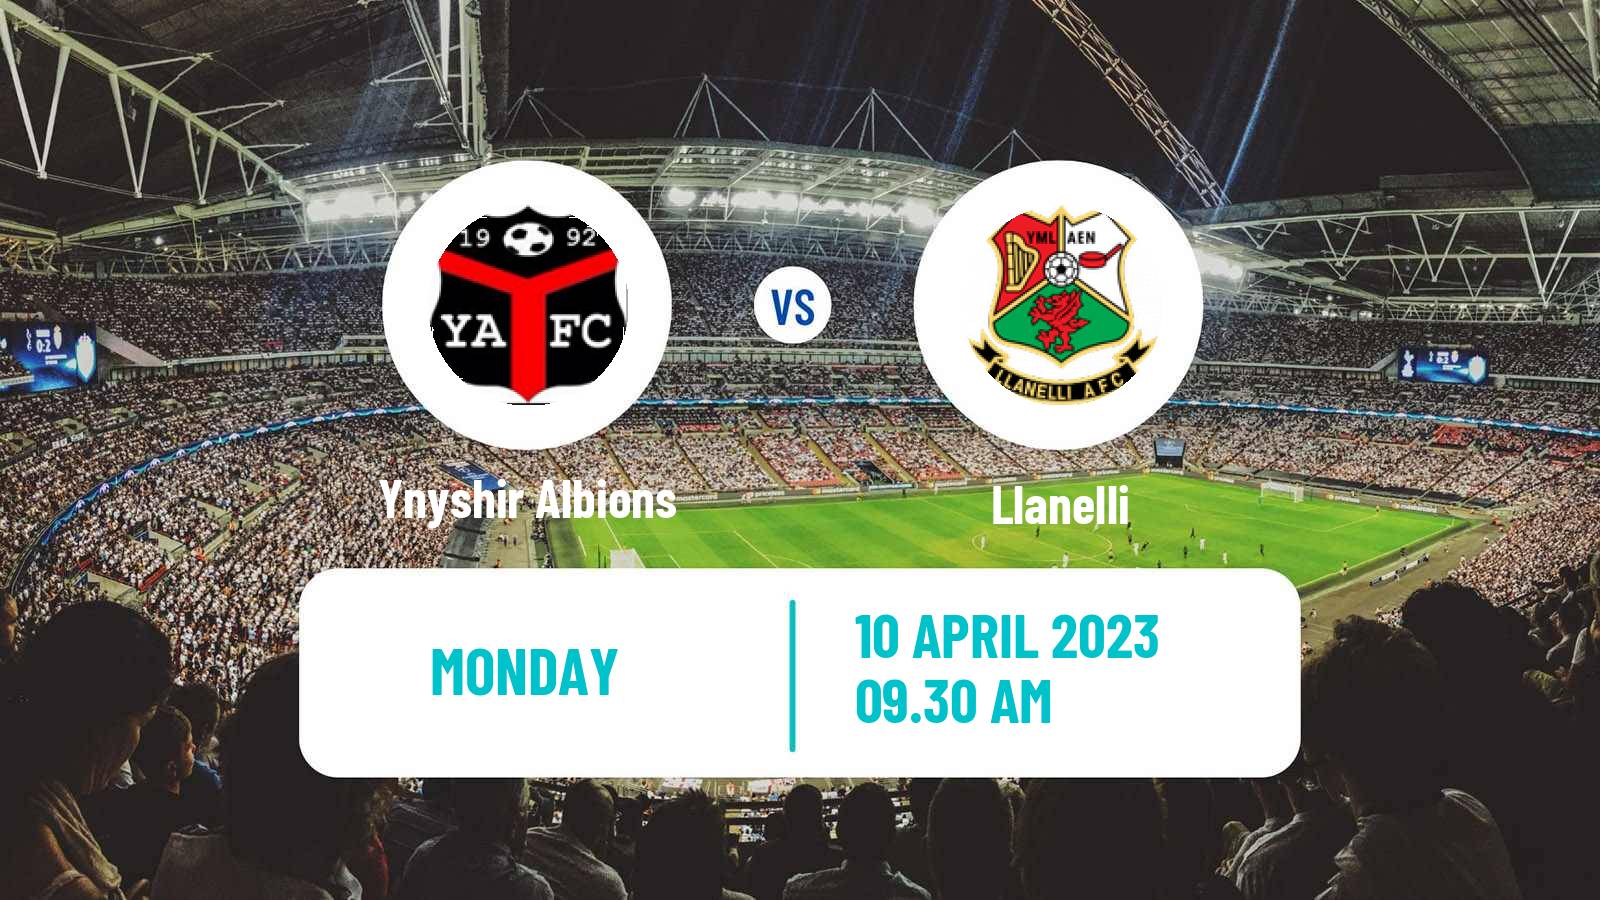 Soccer Welsh Cymru South Ynyshir Albions - Llanelli